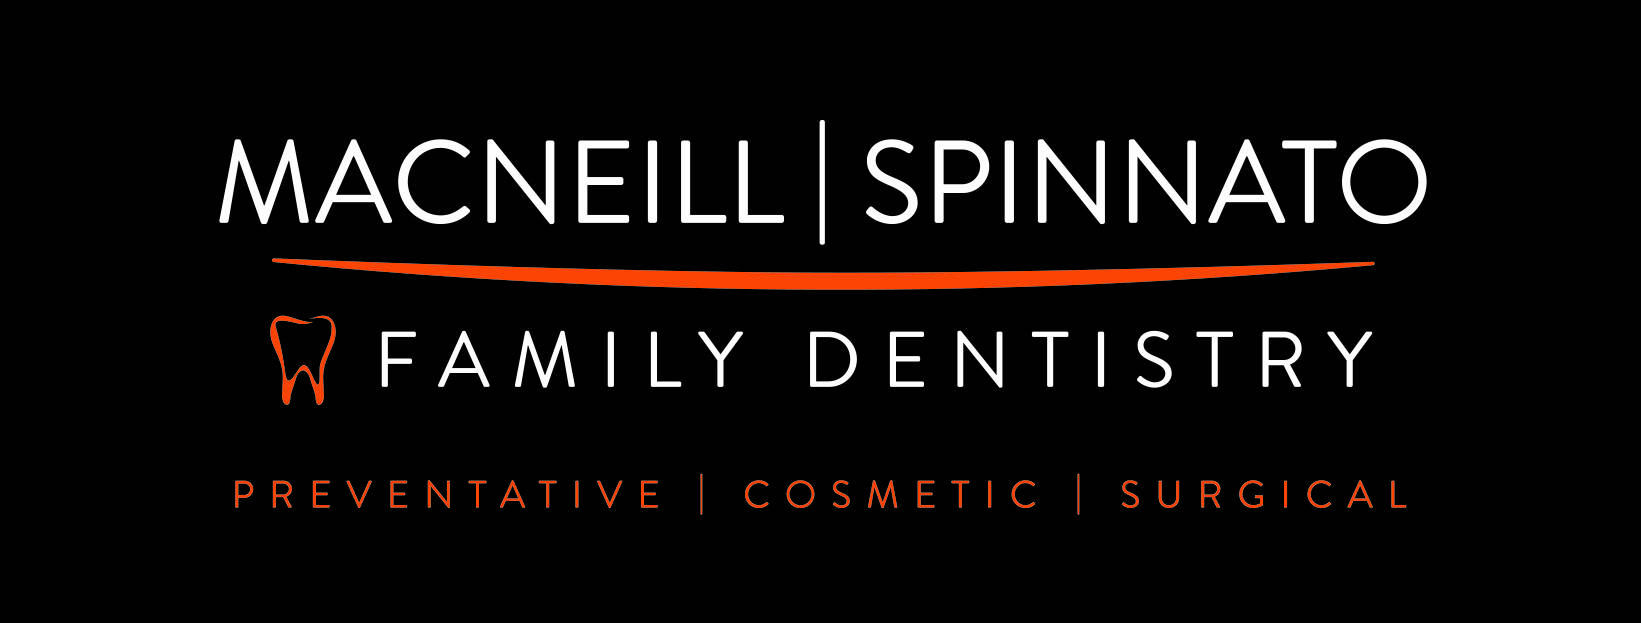 Spinnato Family Dentistry